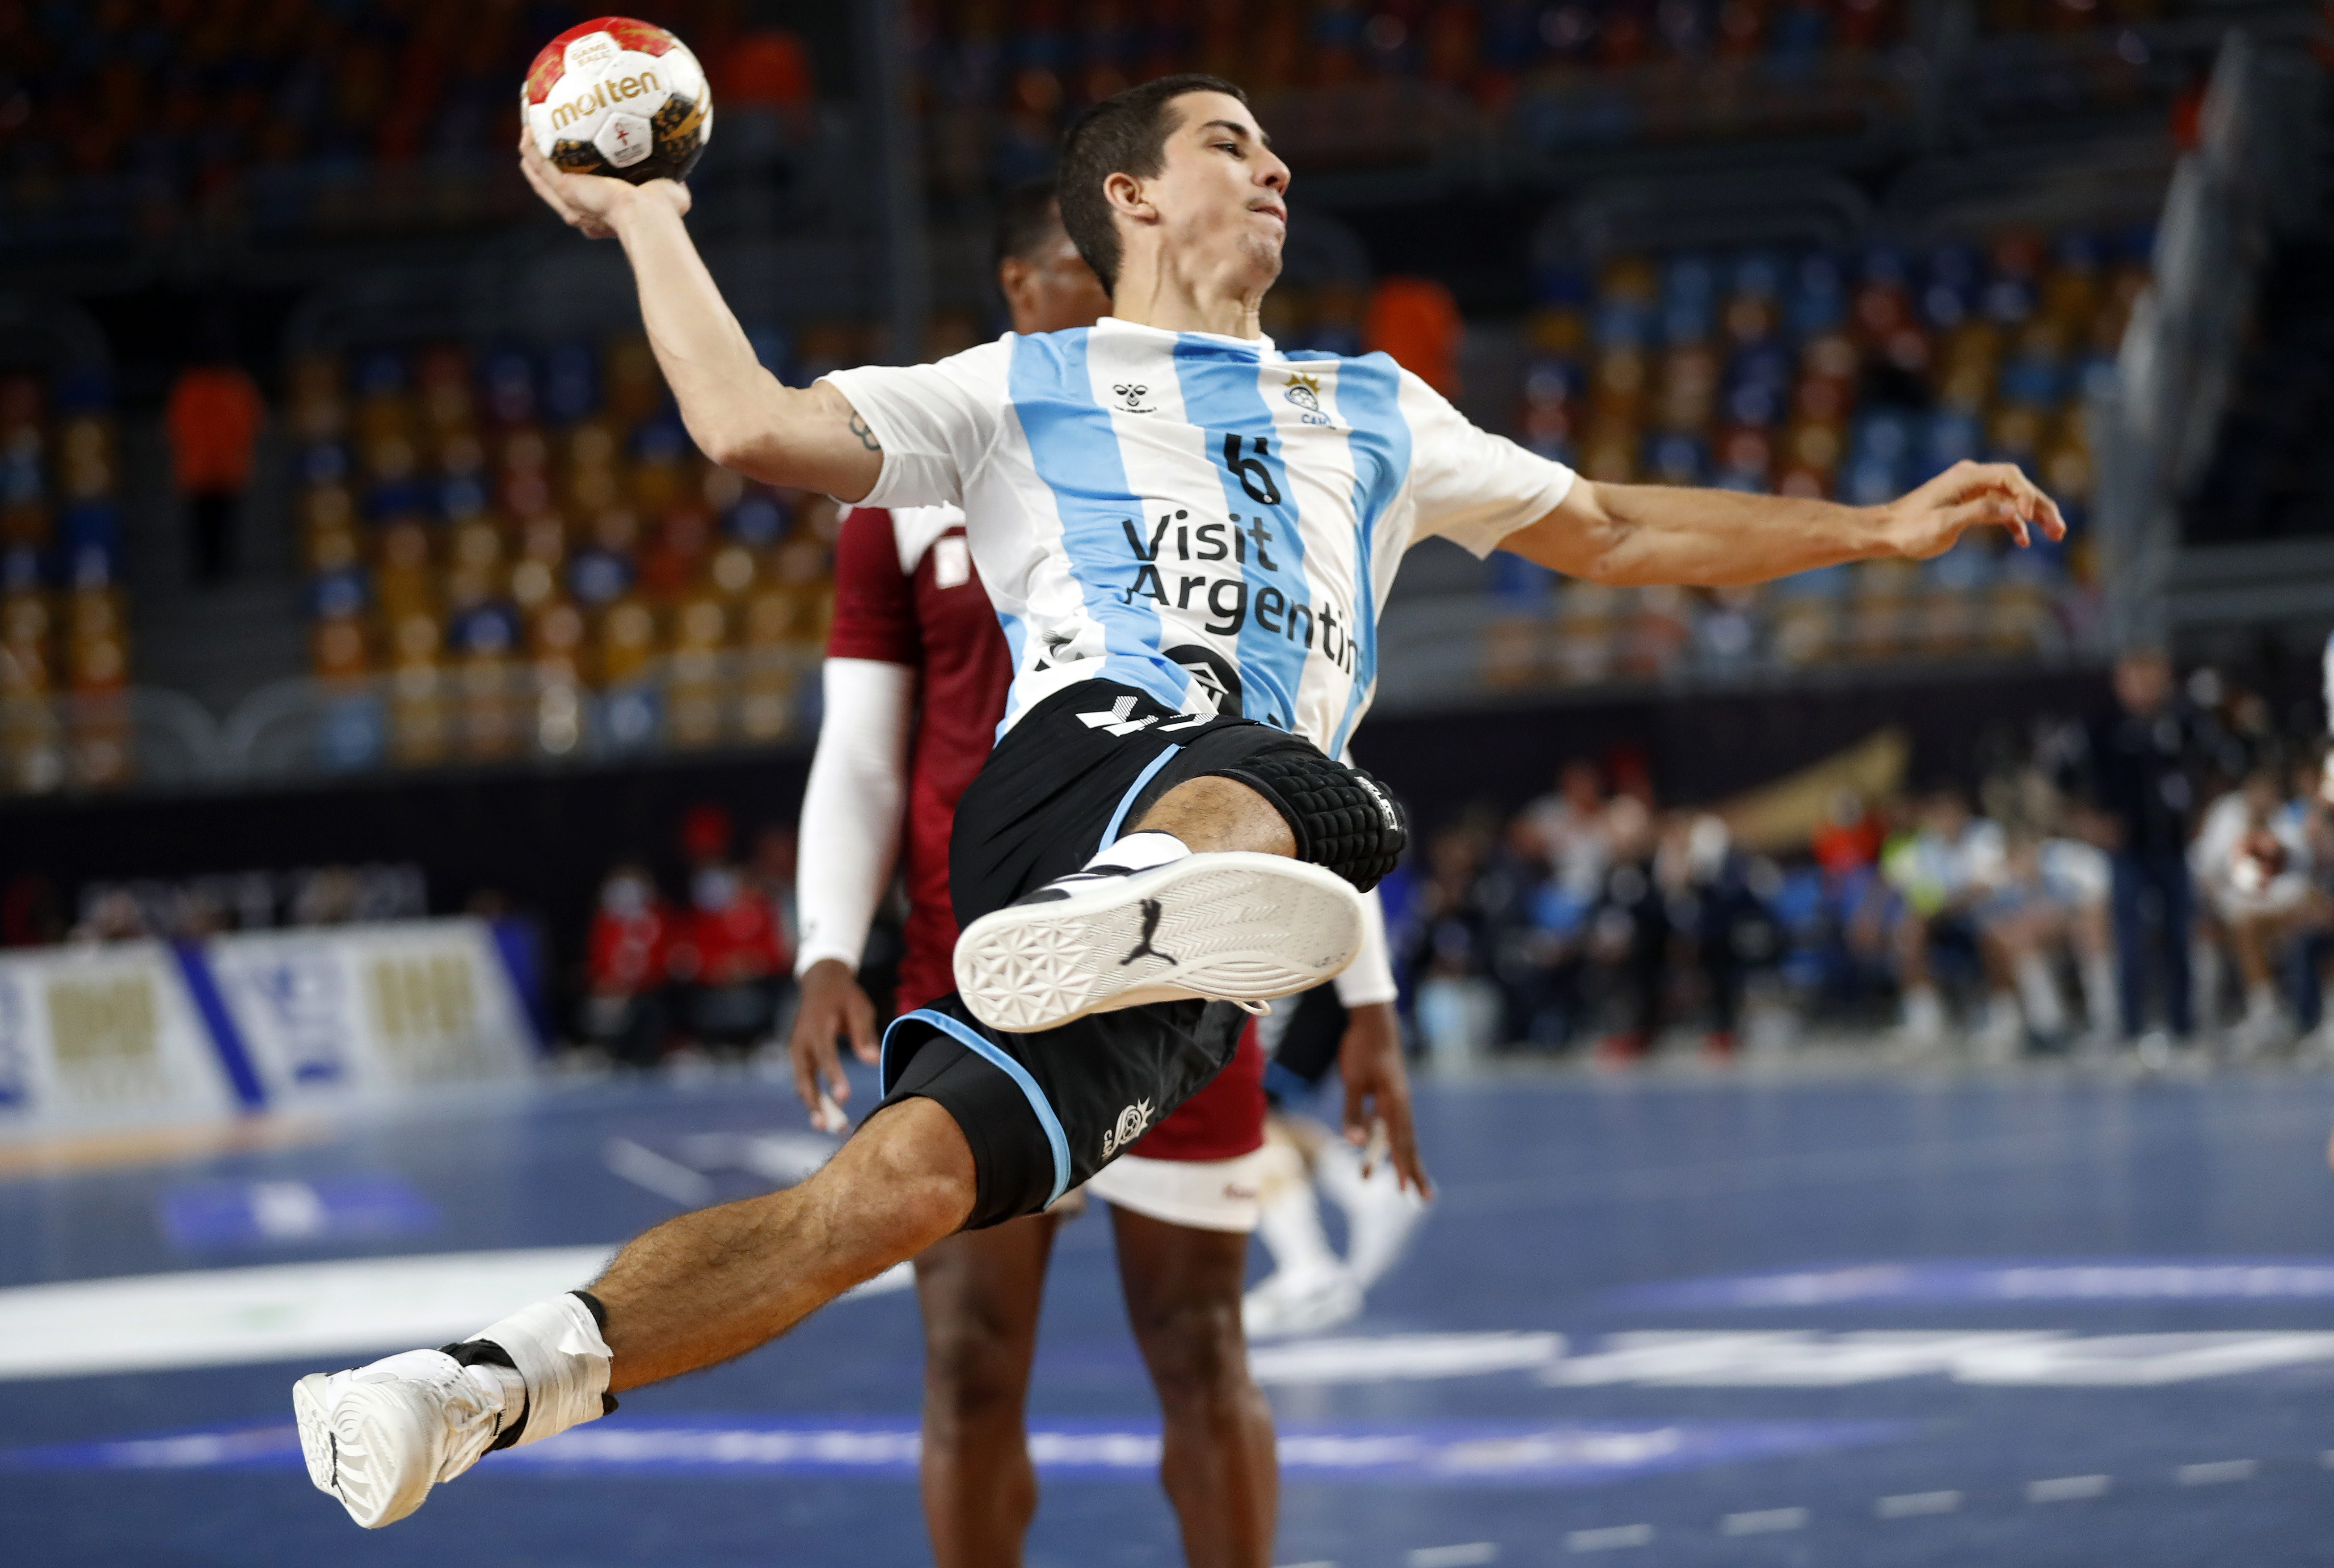 Diego Simonet es el as de espadas de Argentina. Foto: REUTERS/Petr David Josek